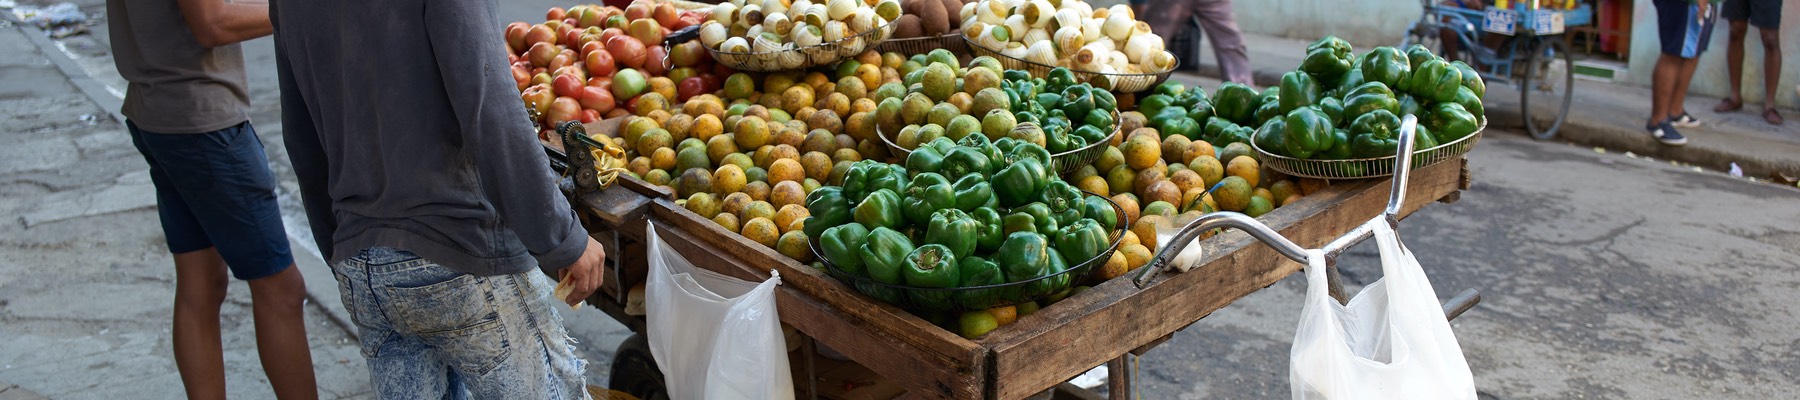 Zöldség-gyümölcs árus